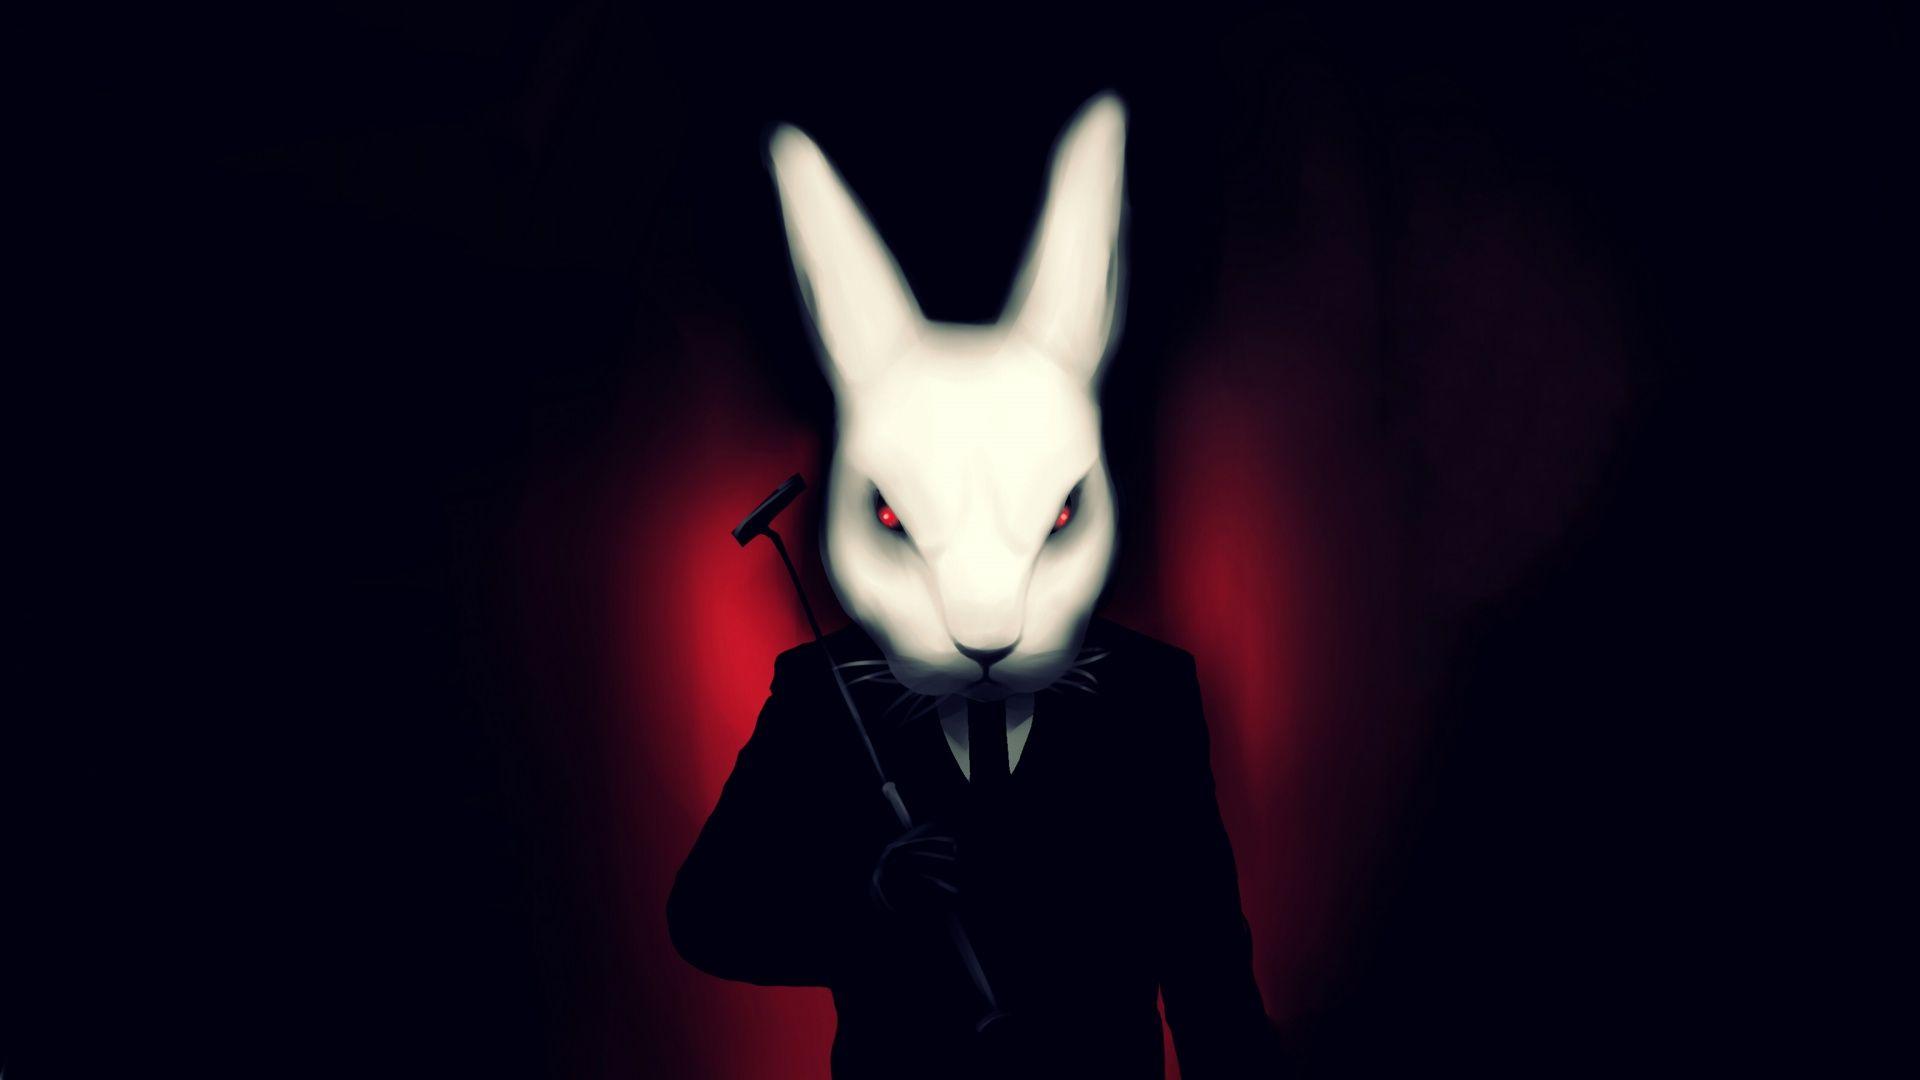 White rabbit artwork Wallpaper